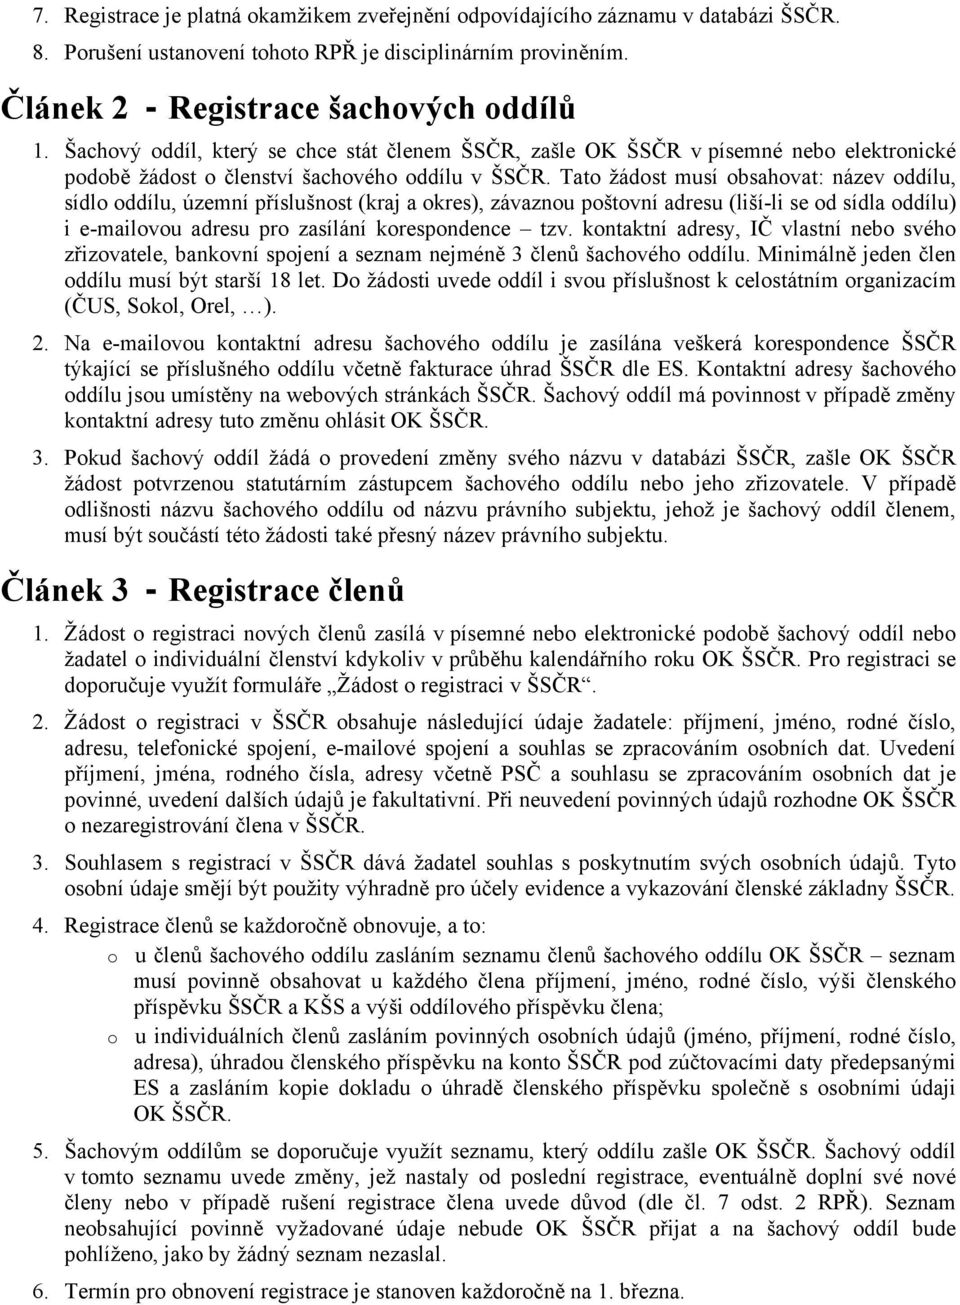 Registrační a přestupní řád ŠSČR - PDF Free Download